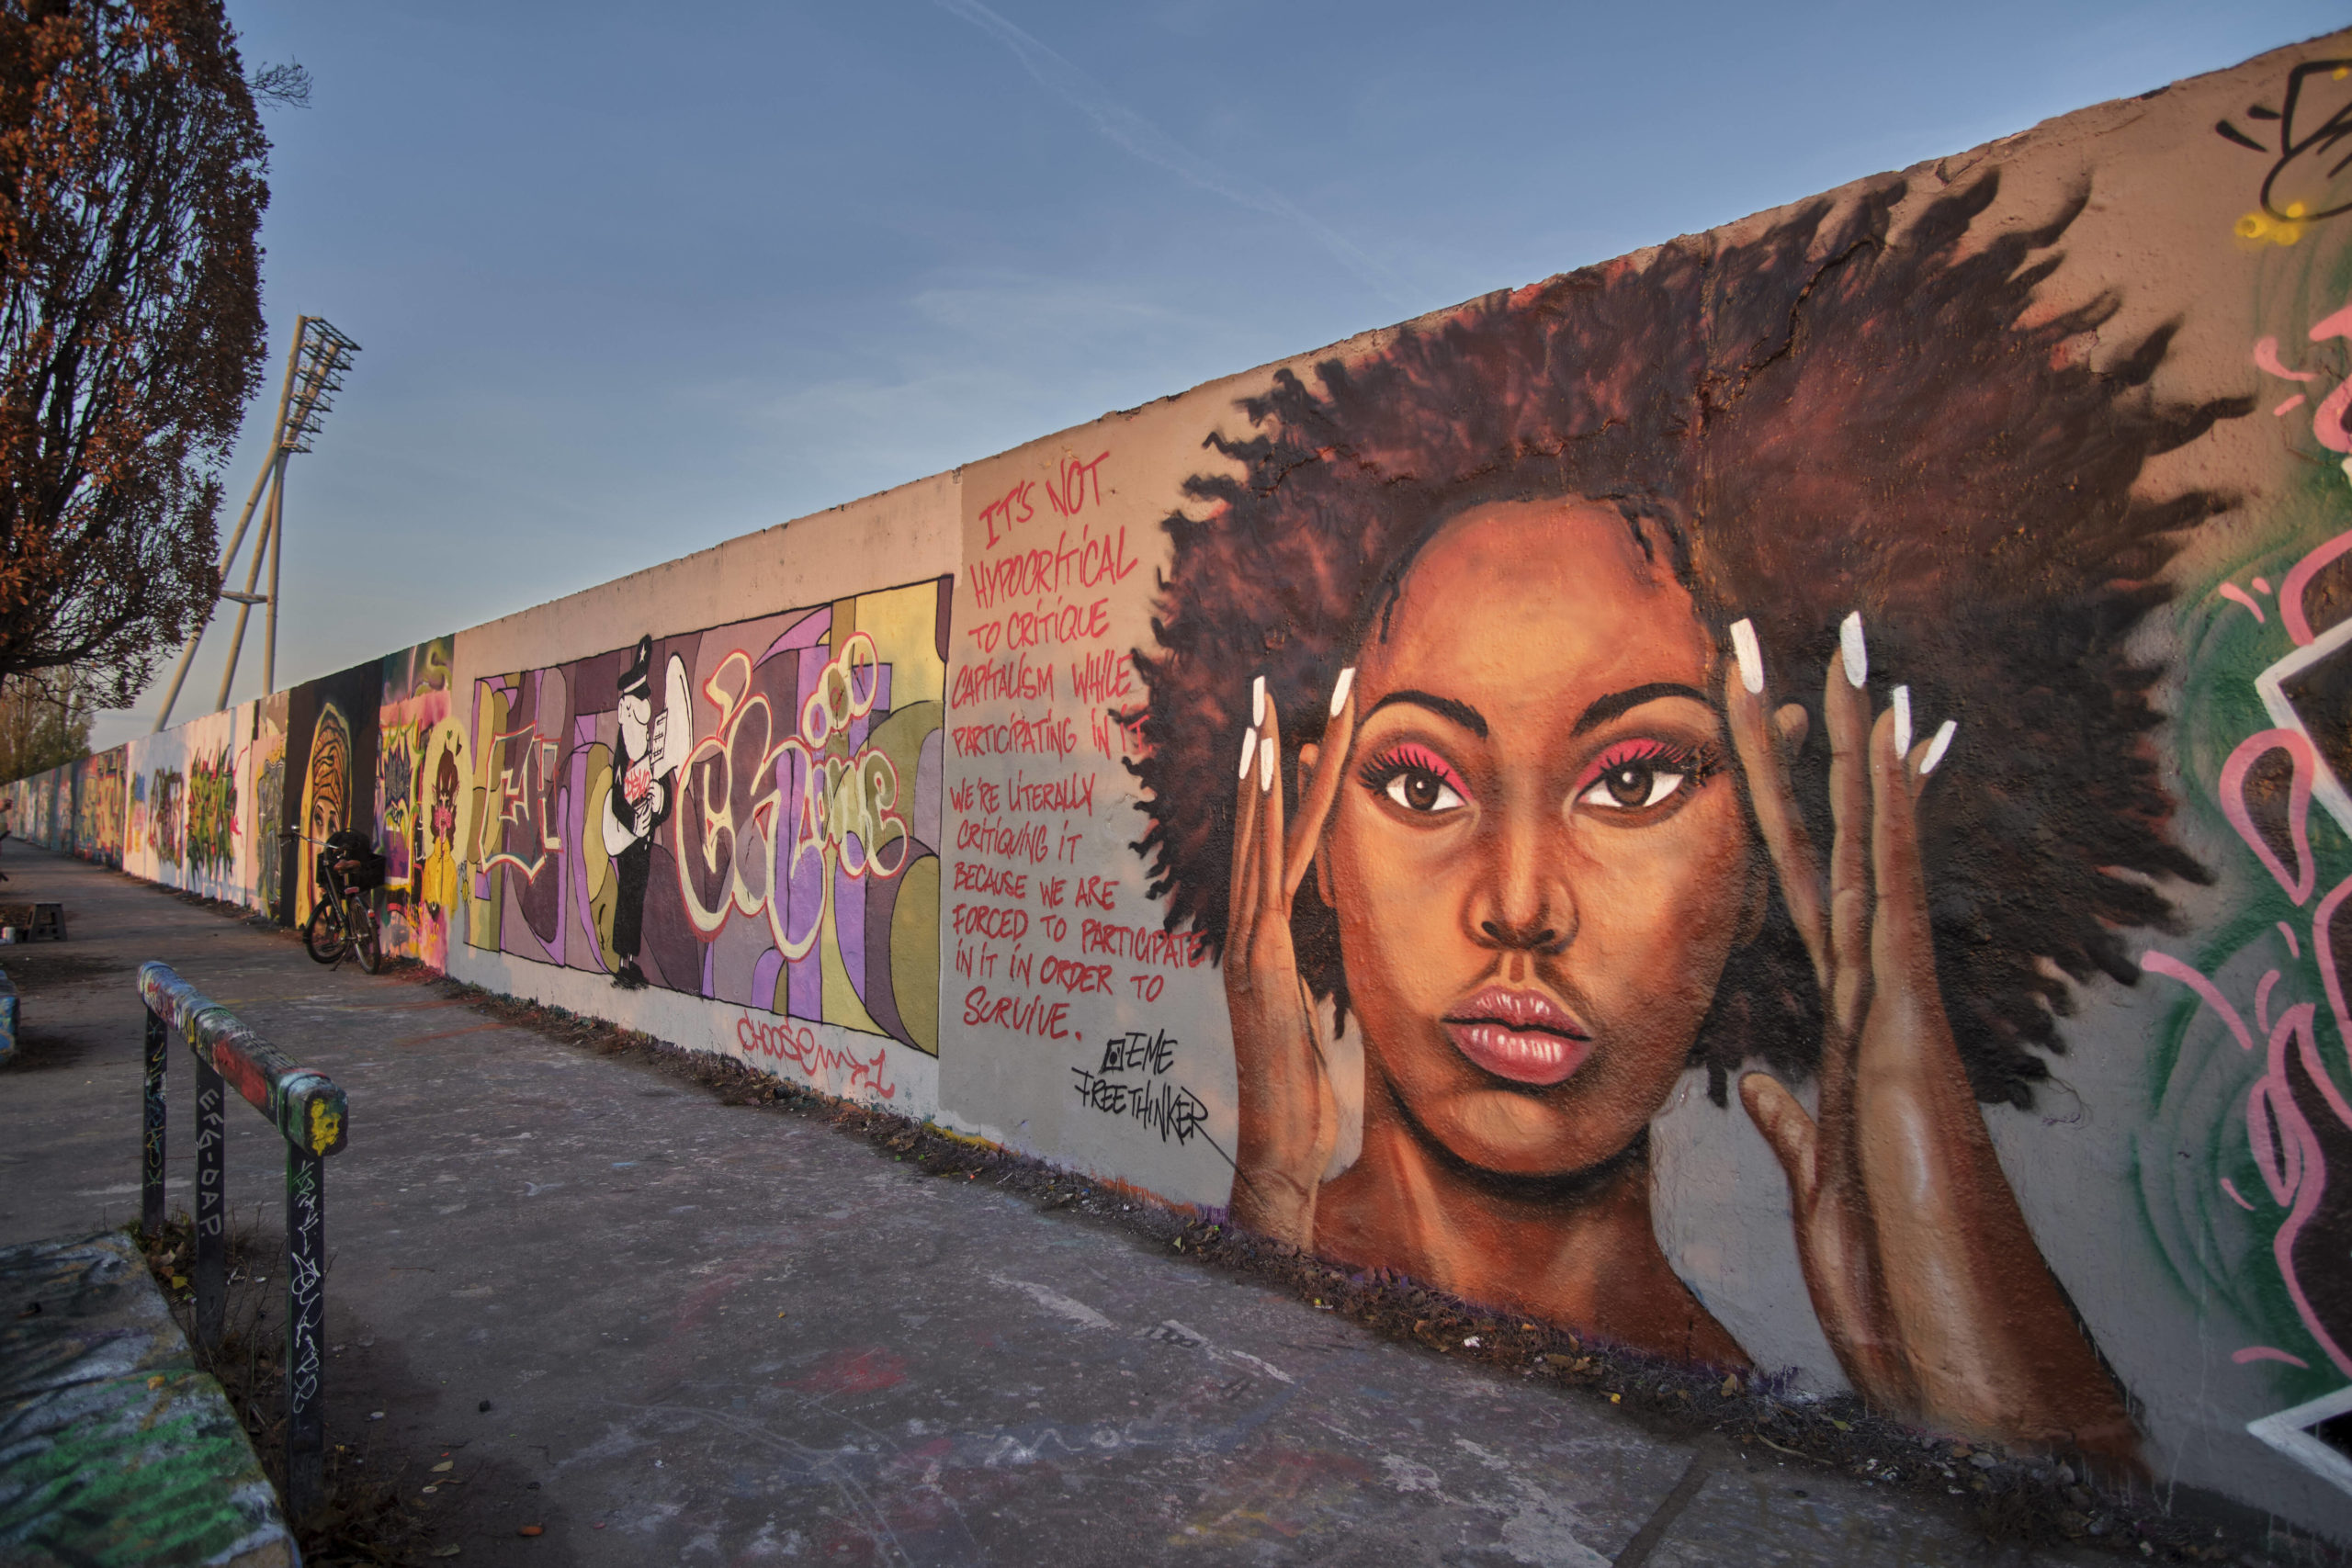 Mauerpark Historische Leinwand: Die Berliner Graffiti-Szene verwandelt den Mauerstreifen im Park rund ums Jahr in eine Street-Art-Galerie.